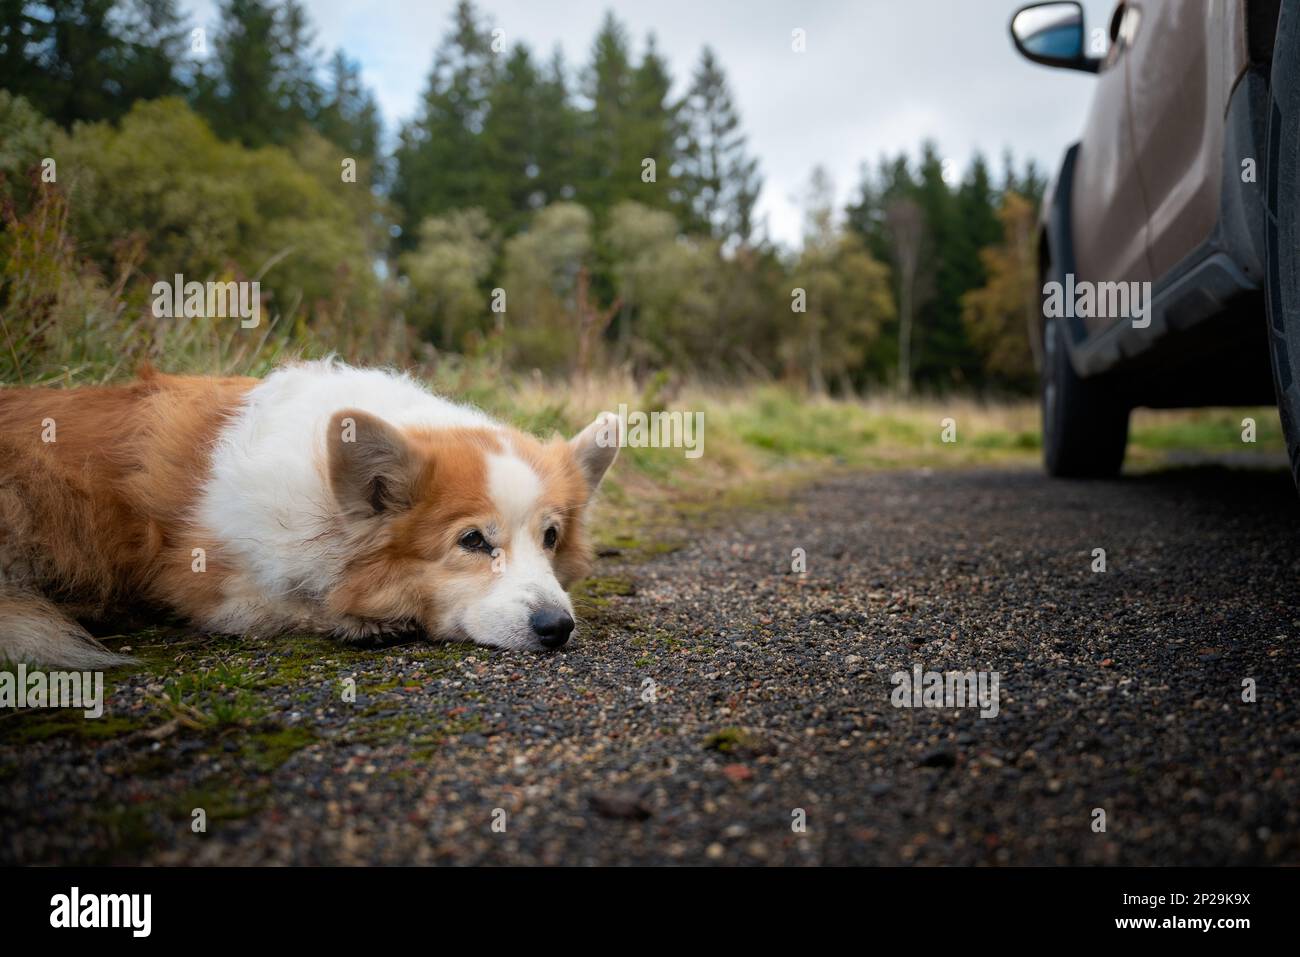 Un chien gallois Corgi Pembroke fatigué se trouve près de la voiture et repose. Chien fatigué après une longue randonnée Banque D'Images